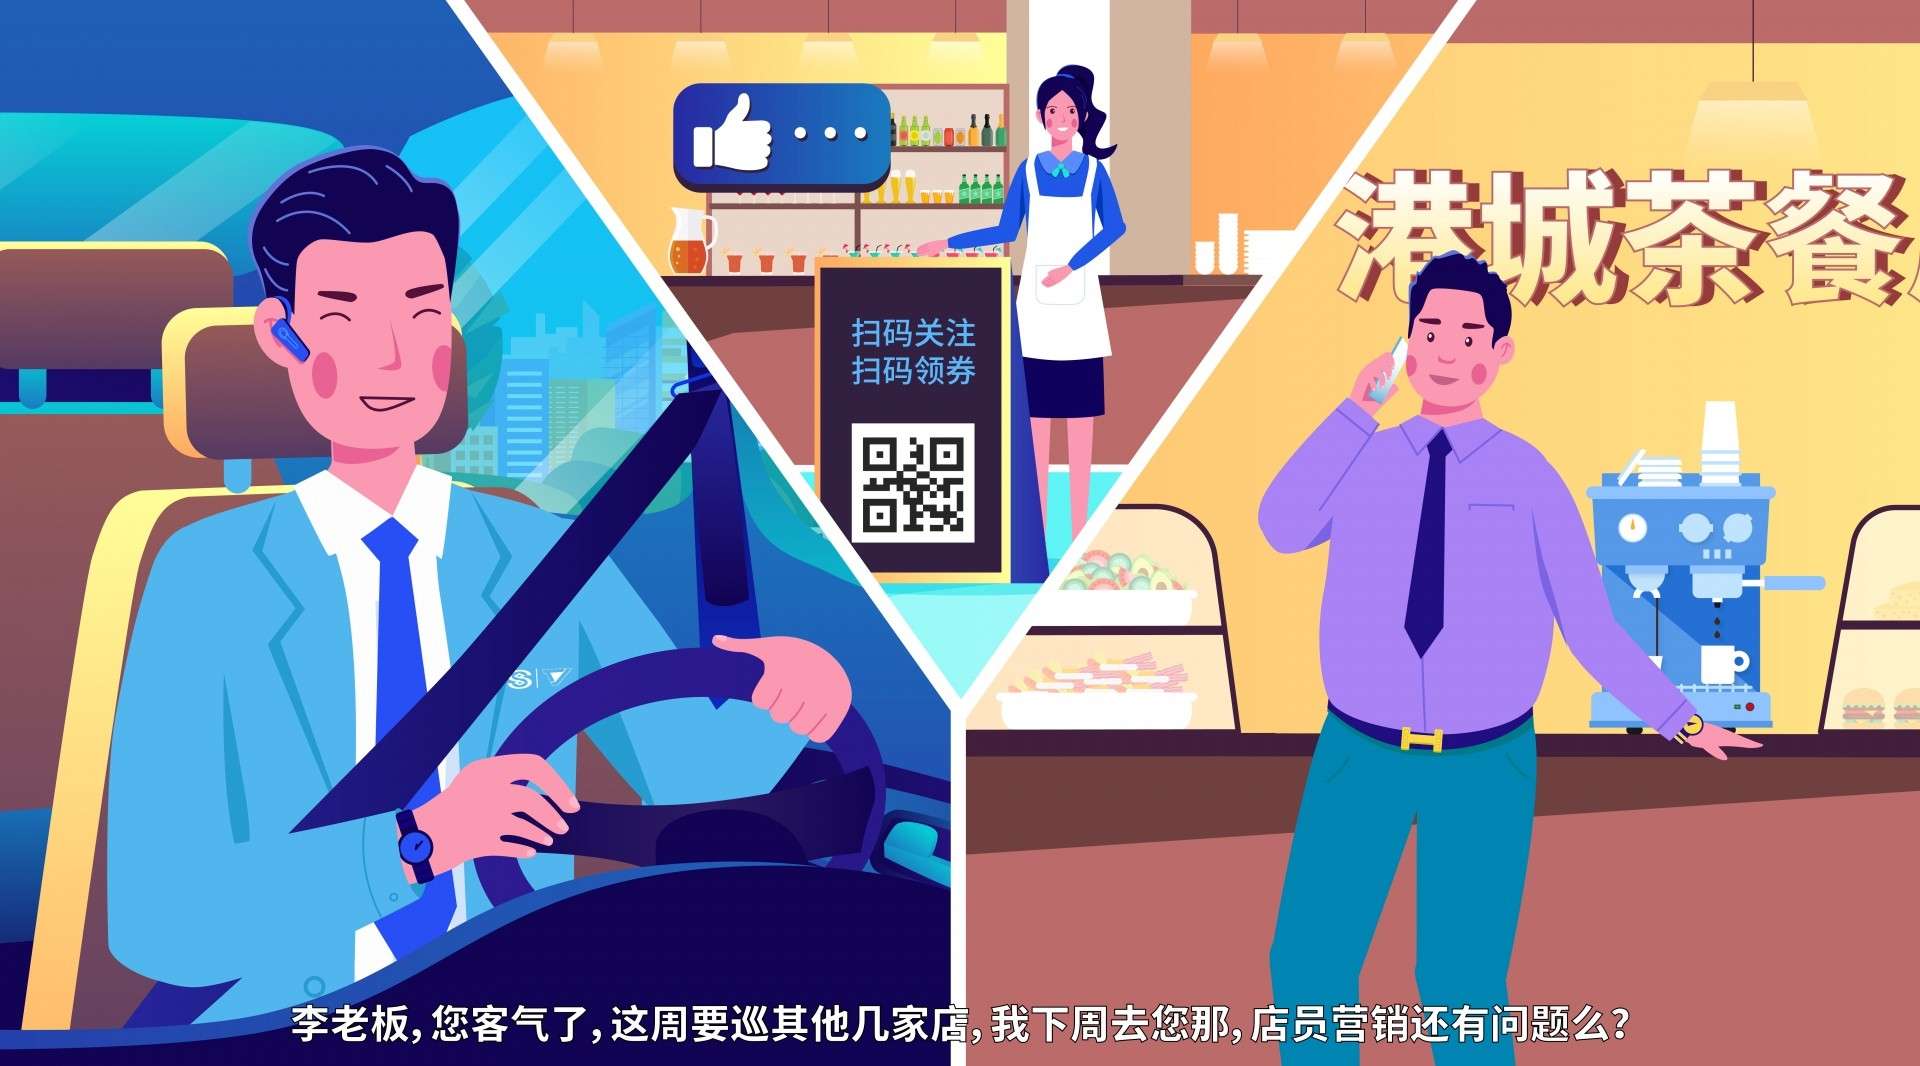 民生信用卡中心 – 壹元文化丨一站式视频解决方案